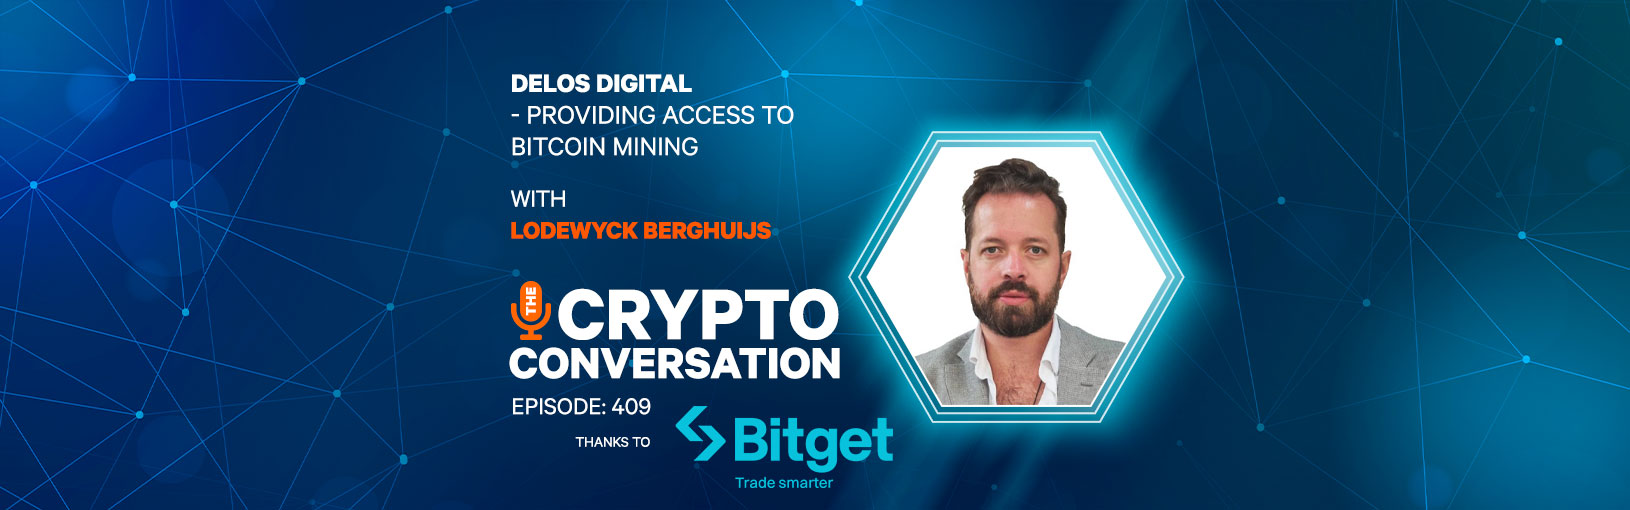 Delos Digital – Providing Access to Bitcoin Mining